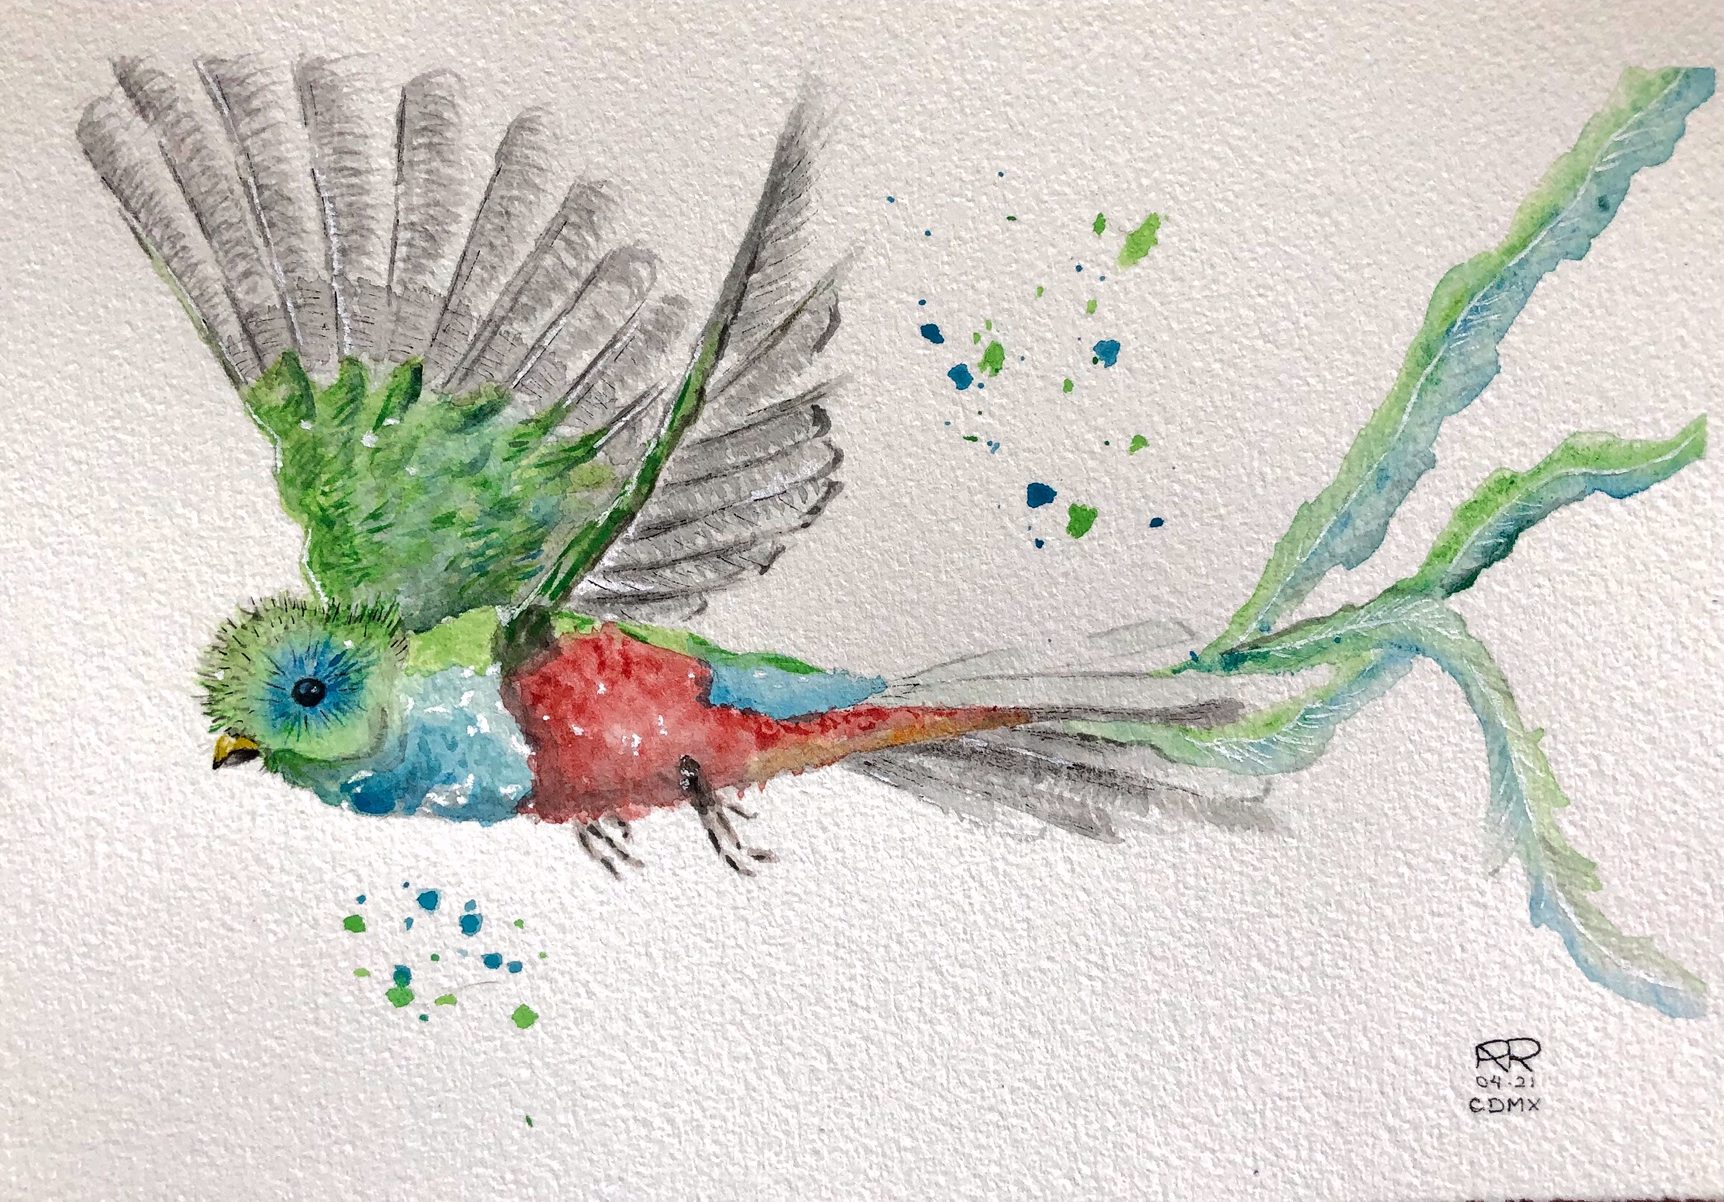 Quetzal Bird